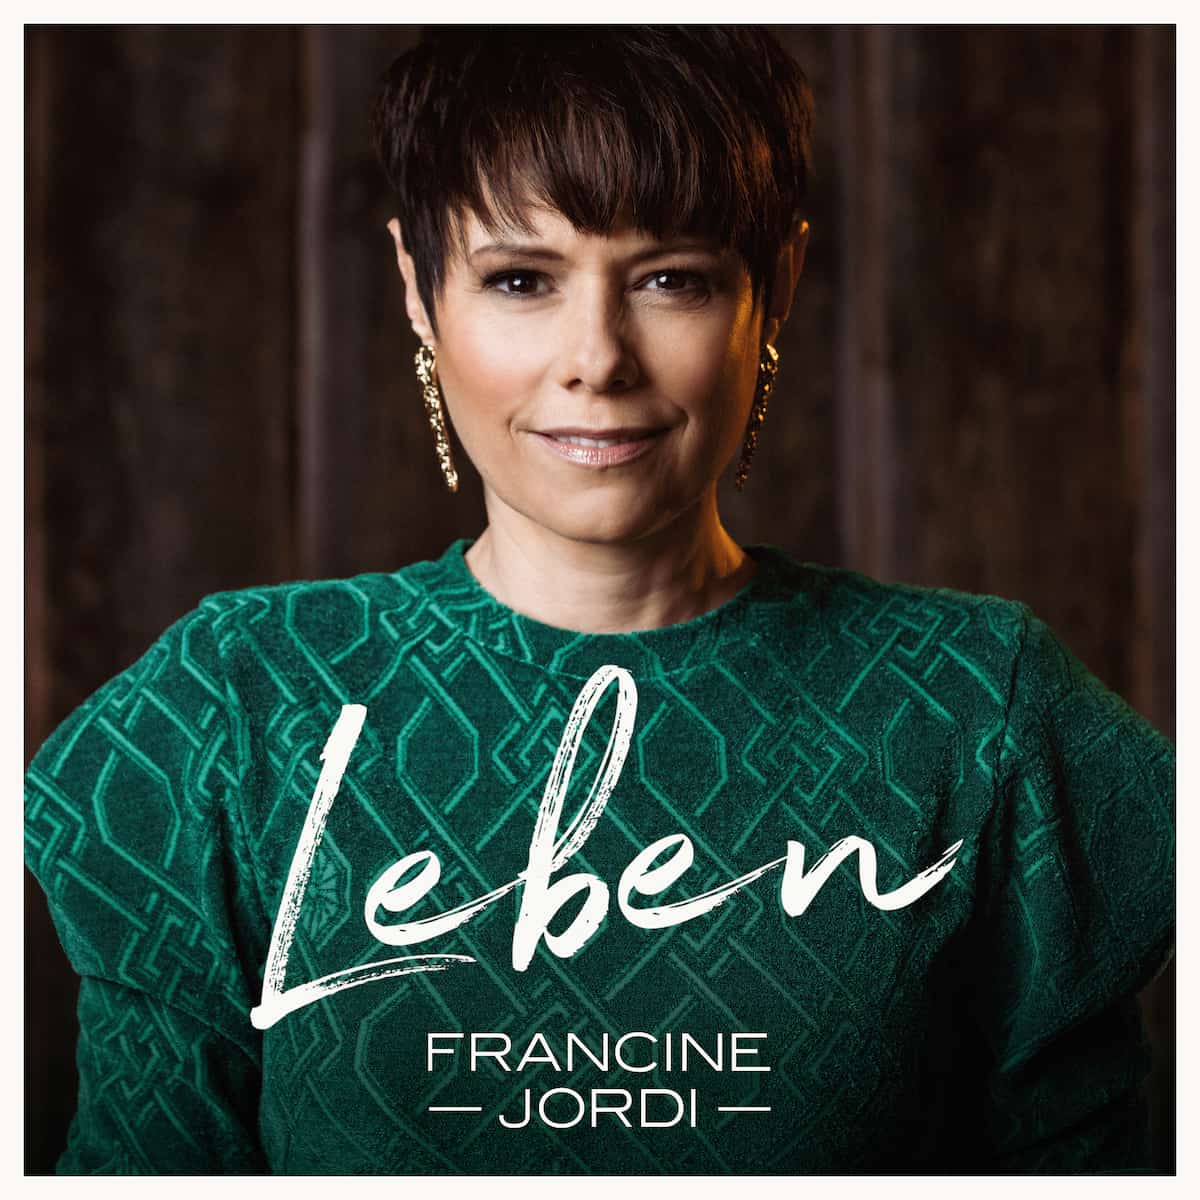 Francine Jordi CD “Leben” 2023 - hier im Bild das CD-Cover mit einem Foto der Schlager-Sängerin Francine Jordi